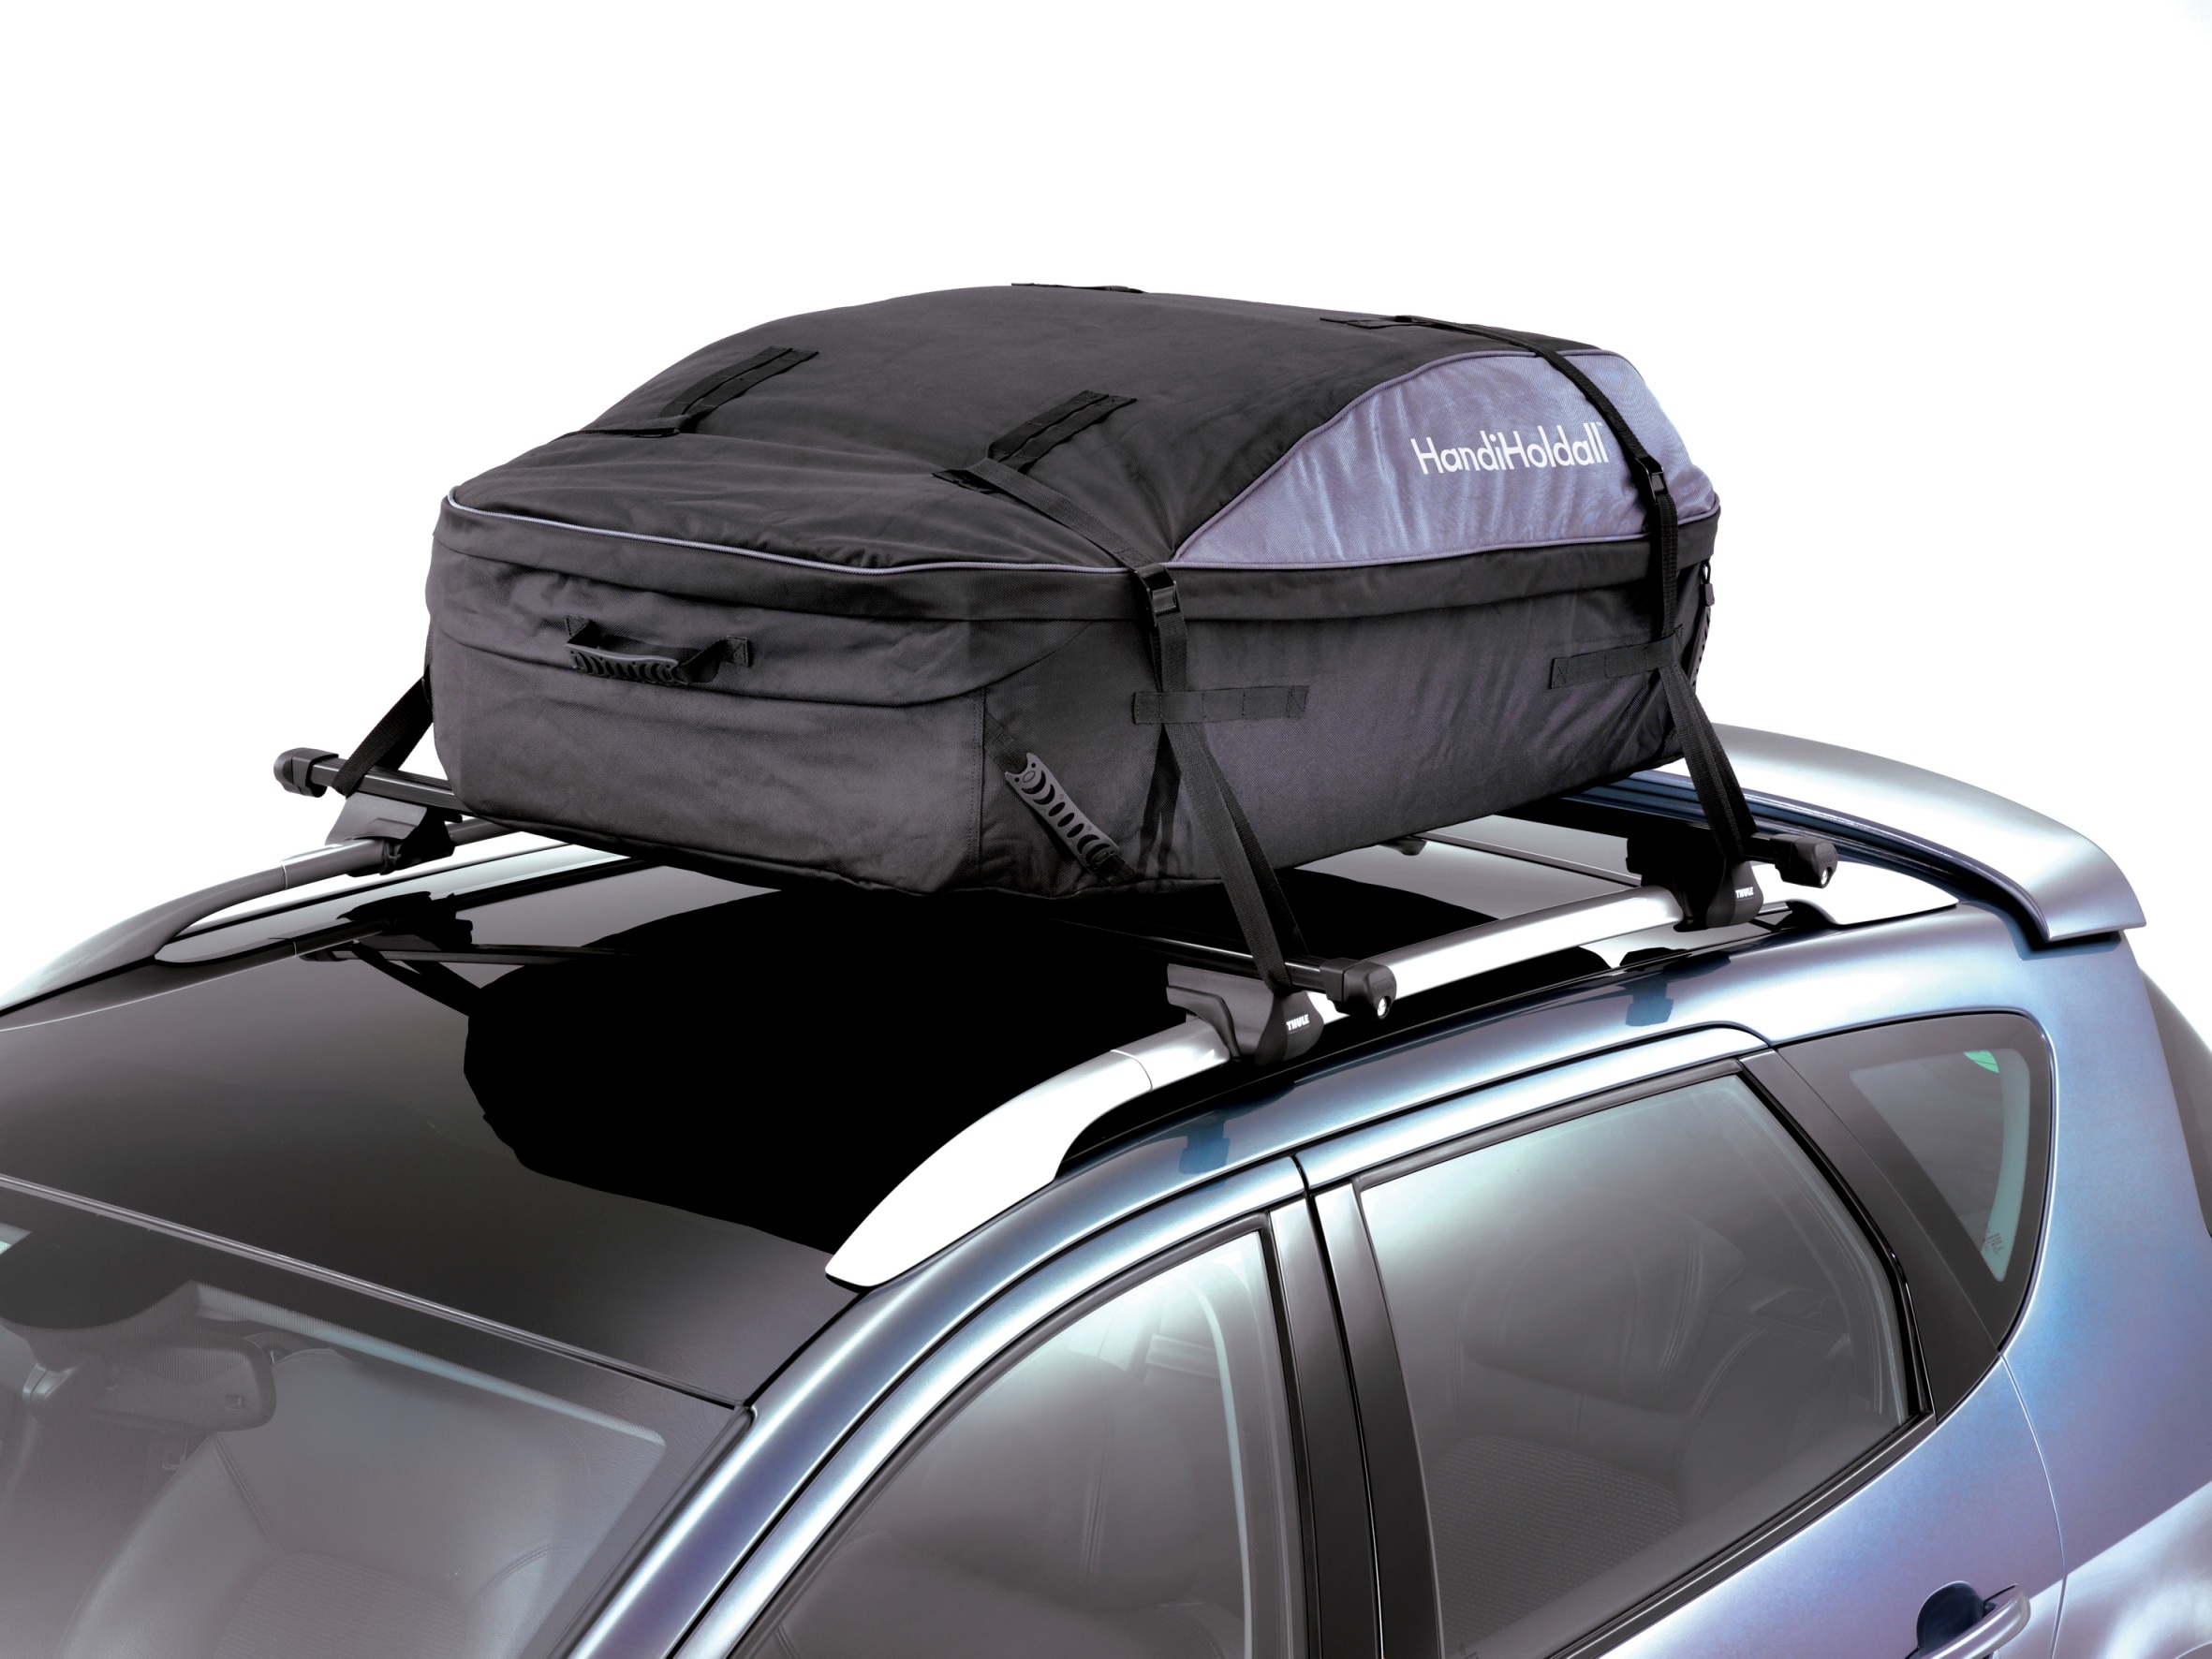 Caixas de equipaxe brandas no teito dun coche - valoración dos mellores modelos